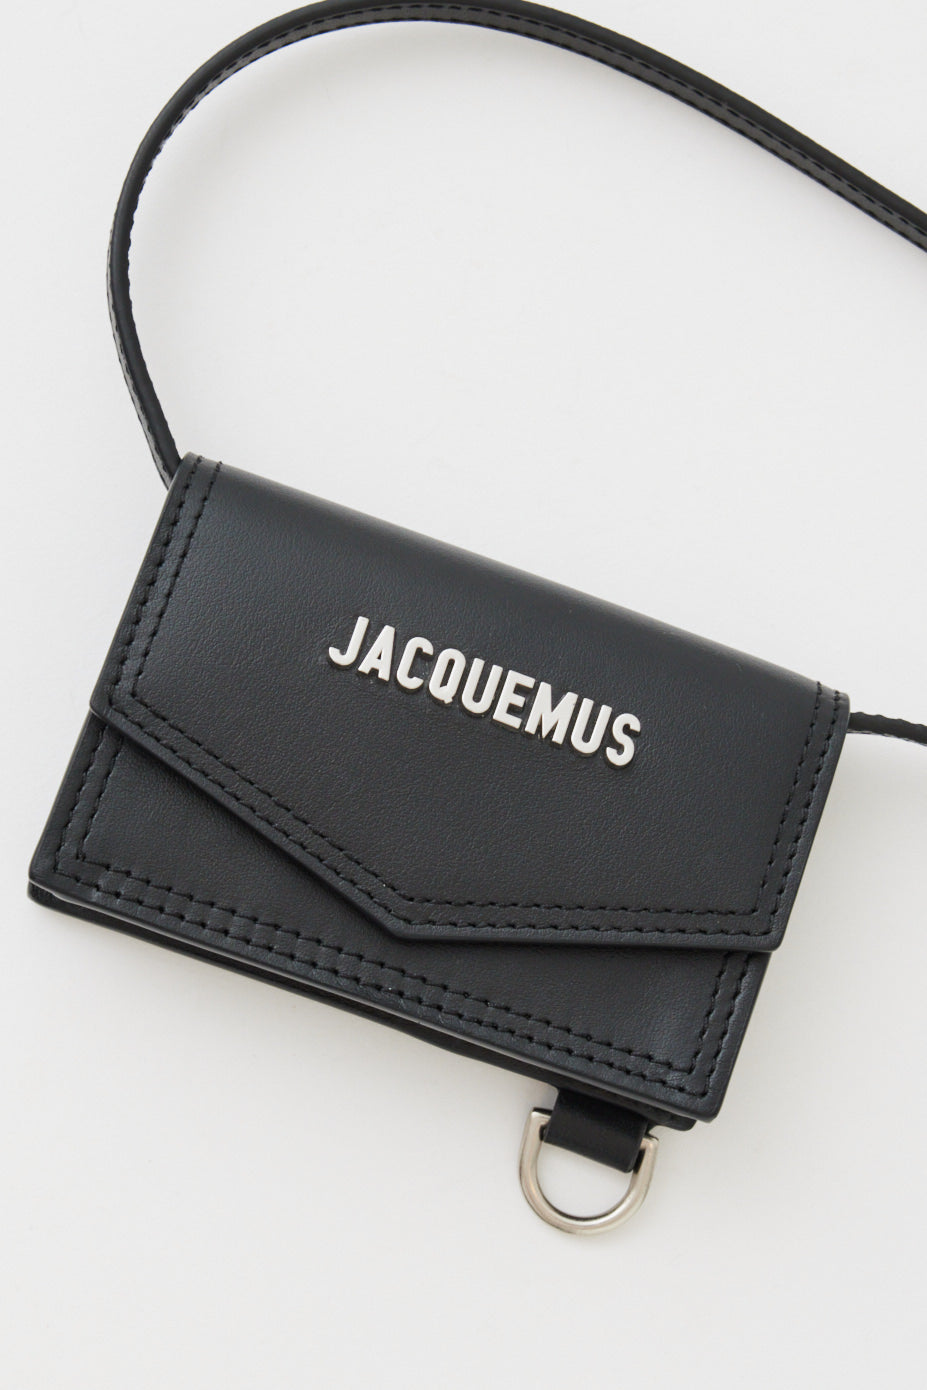 Jacquemus Men's Le Porte Azur Leather Envelope Card Holder